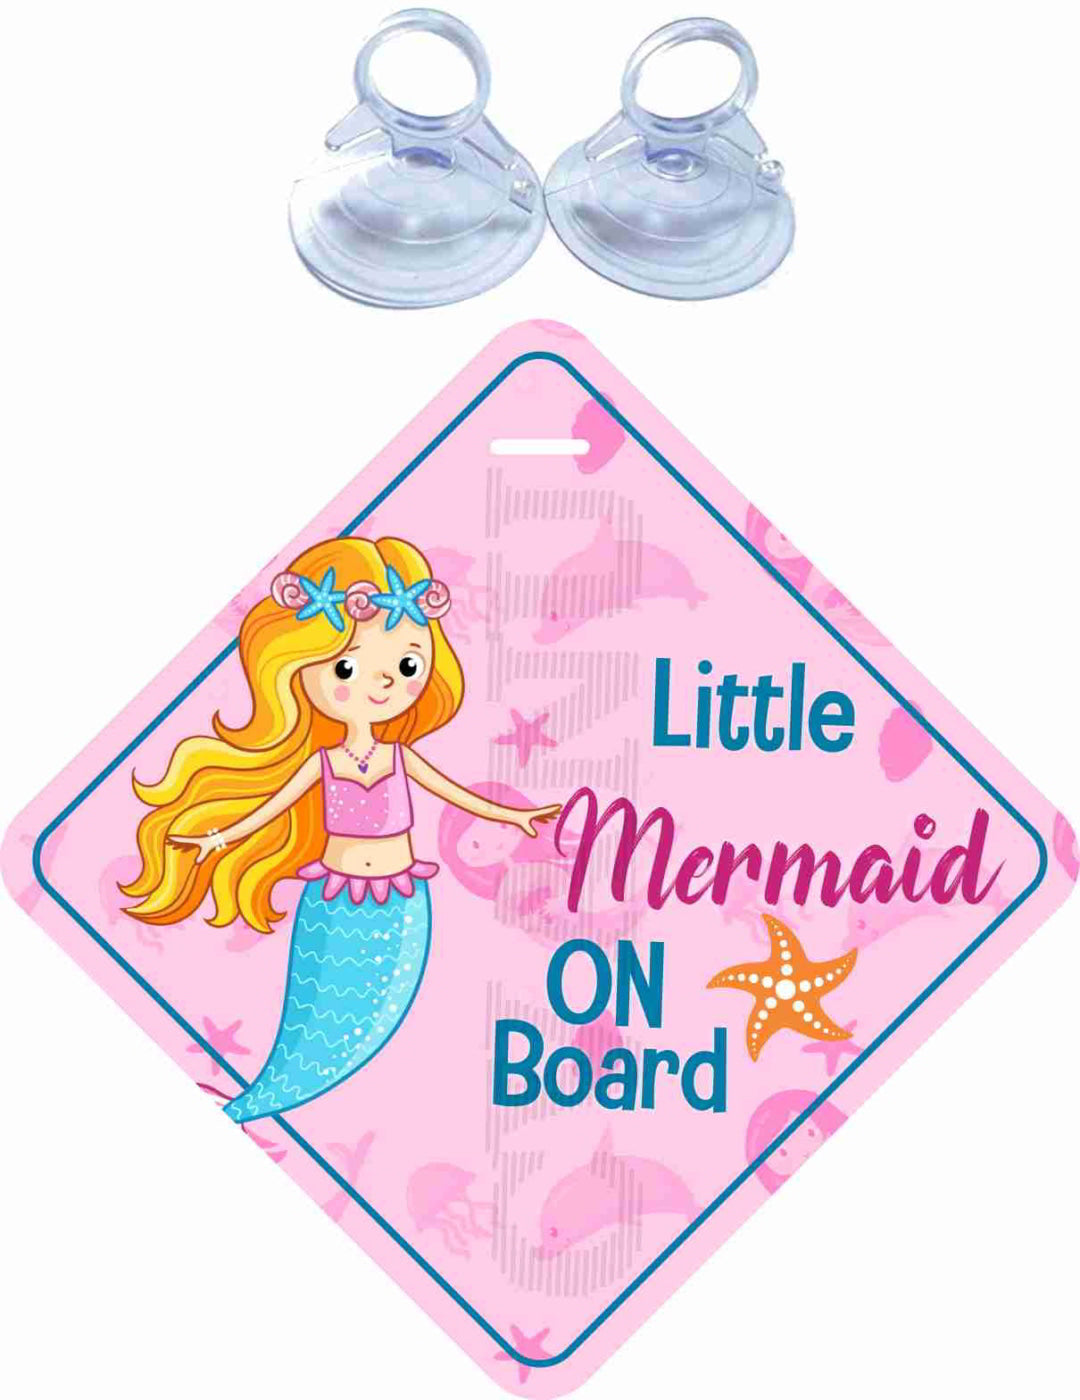 Little Mermaid on Board Safety Sticker